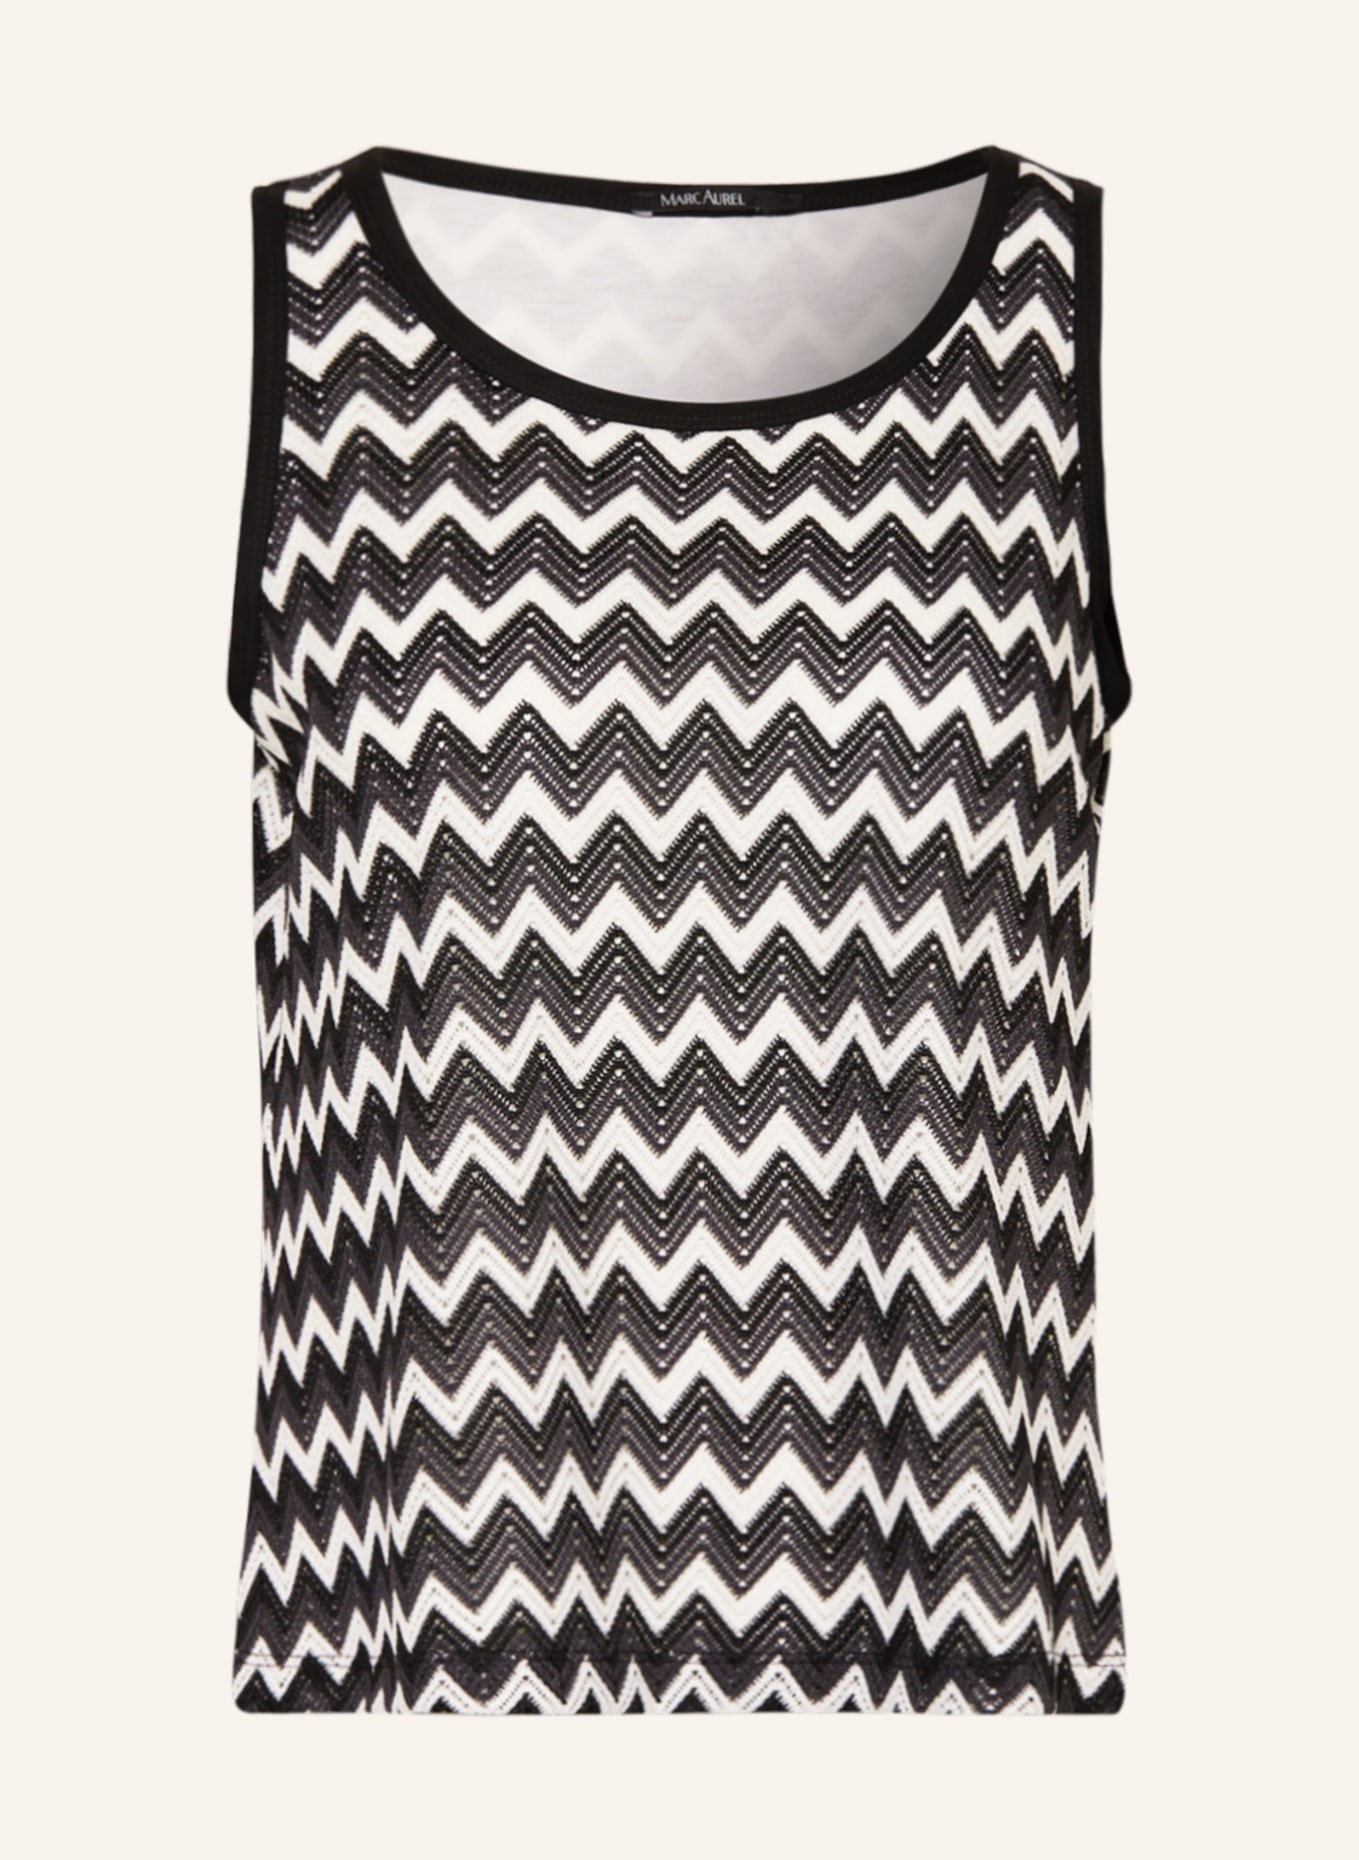 MARC AUREL Knit top, Color: BLACK/ WHITE (Image 1)